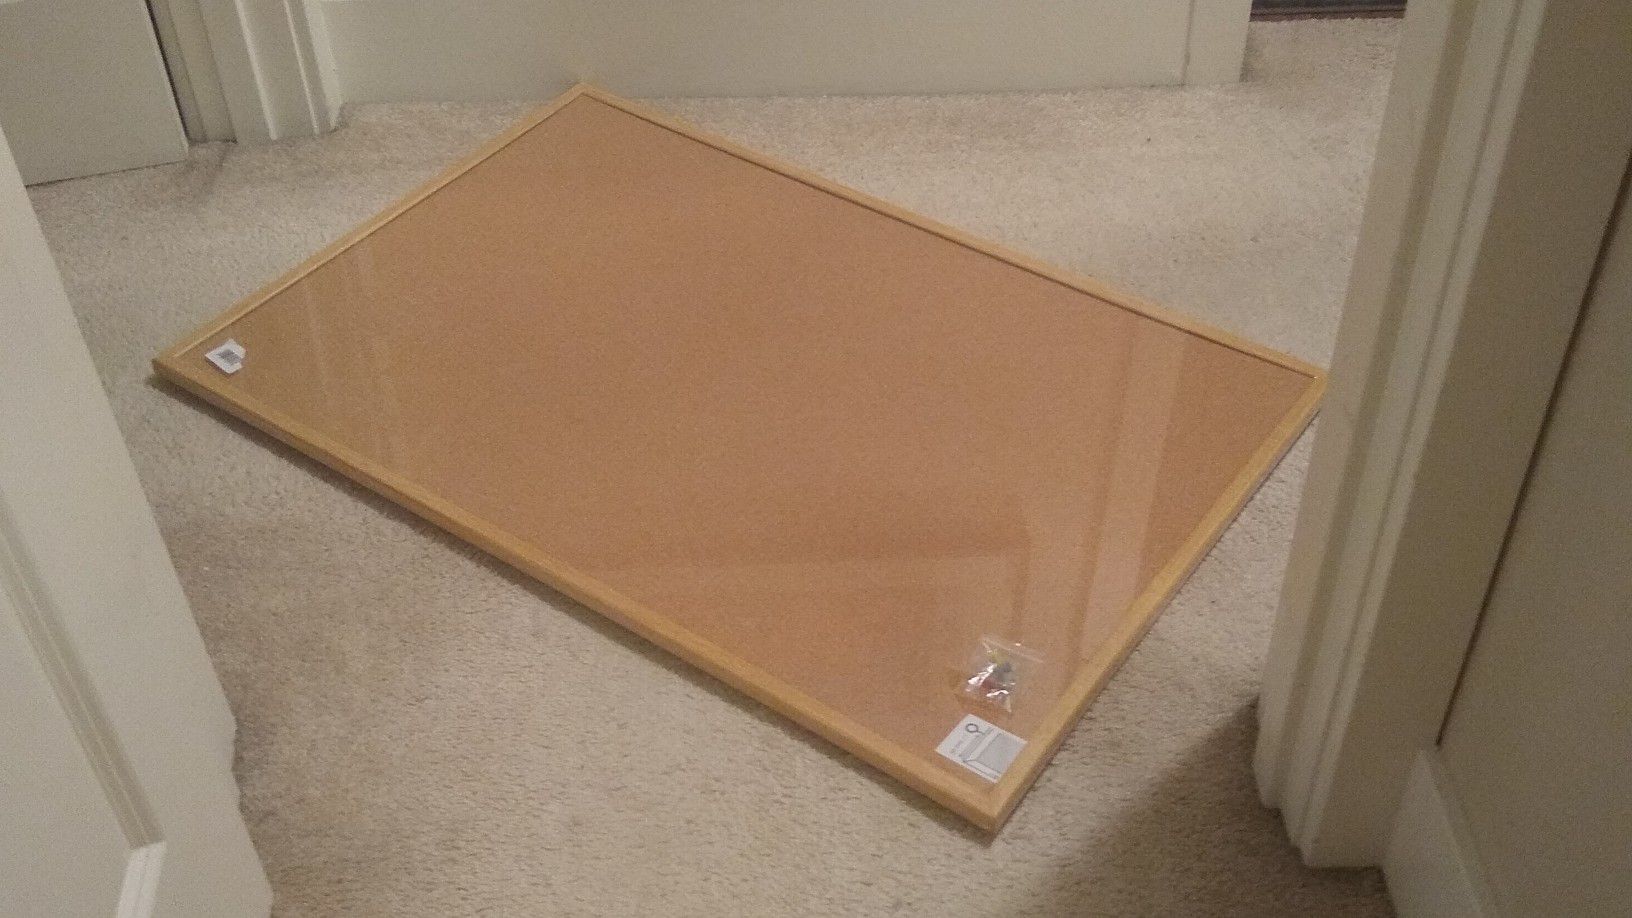 Ultralight wood framed 2 x 3 foot bulletin board corkboard with hardware